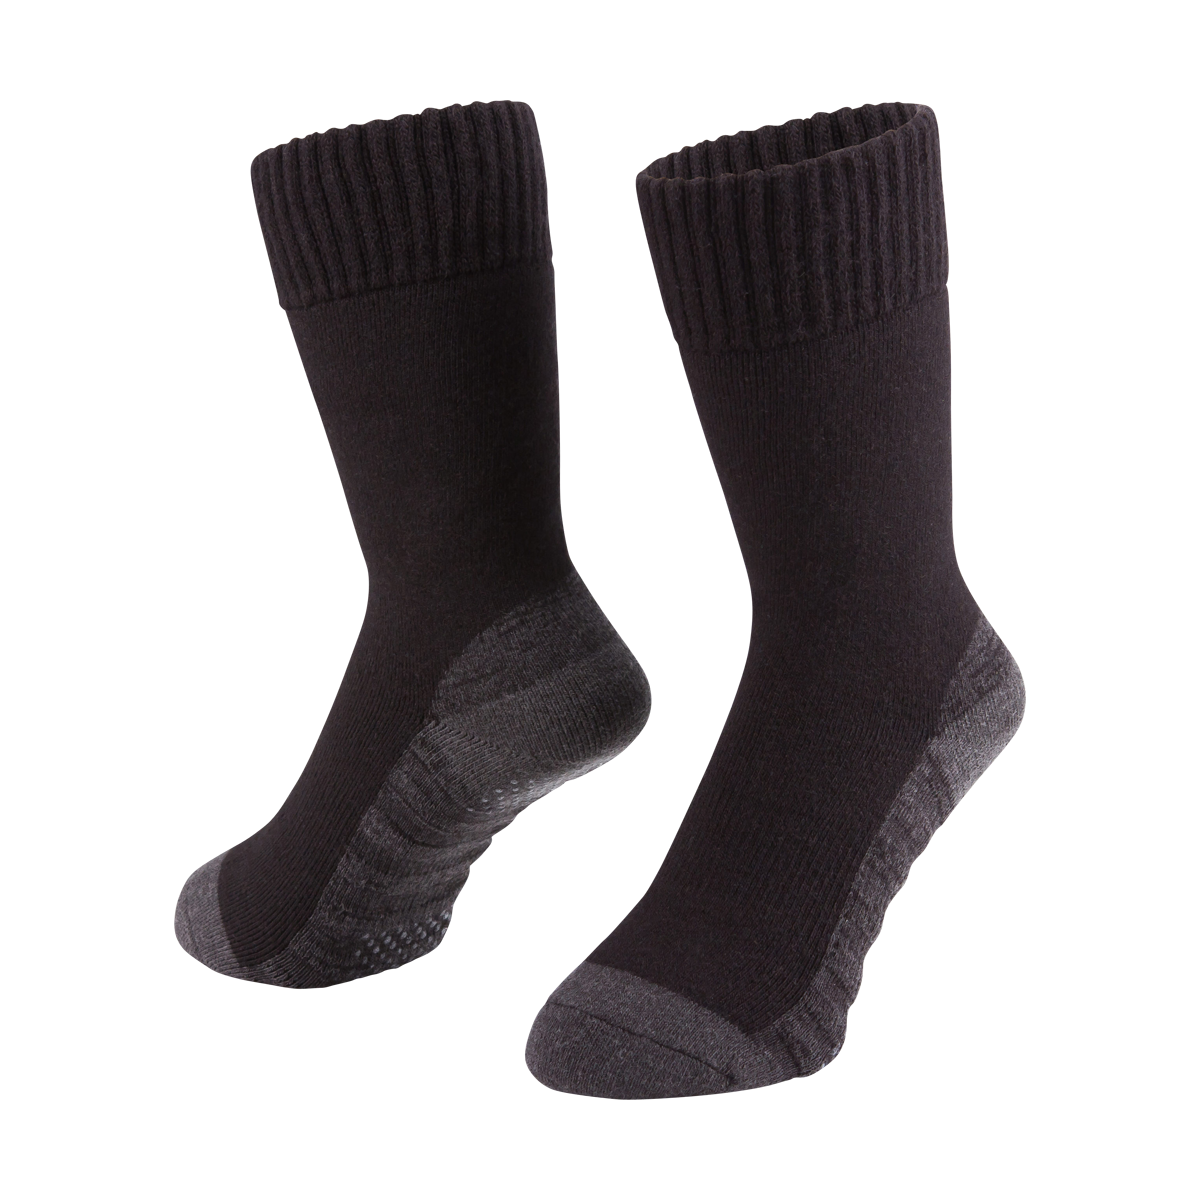 Heatrub Ultimate Socks